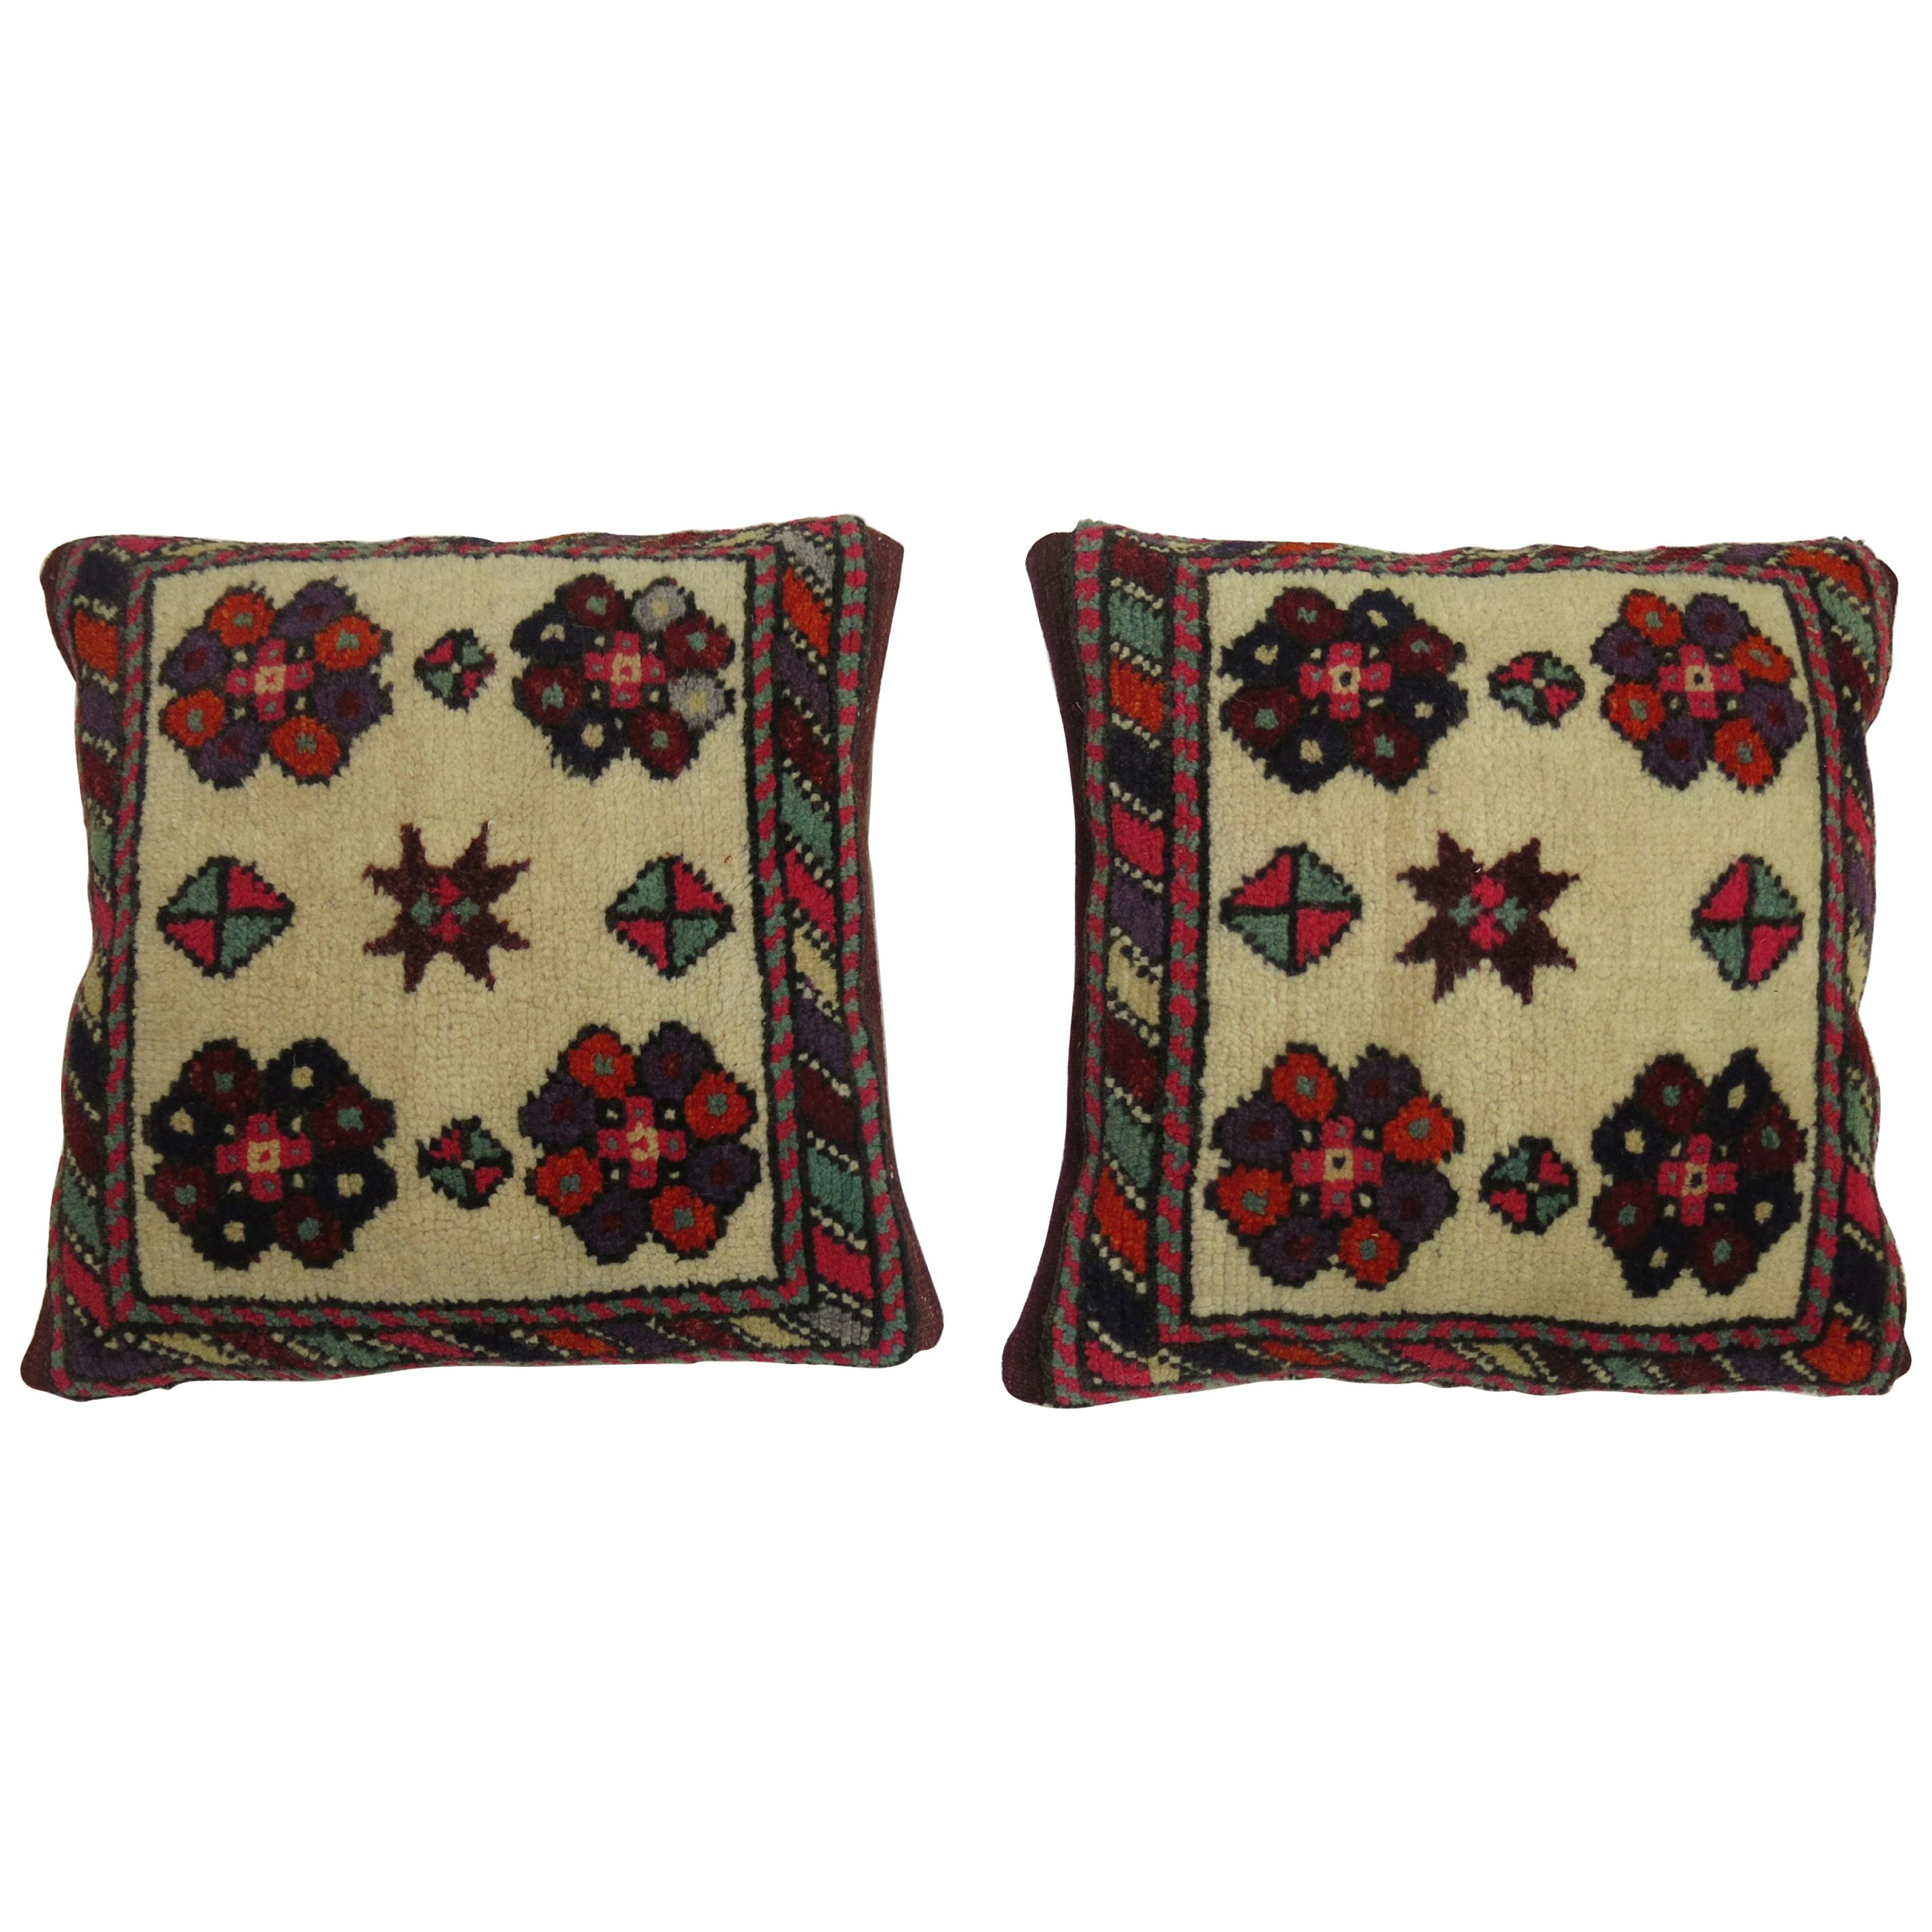 Pair of Turkish Village Rug Pillows